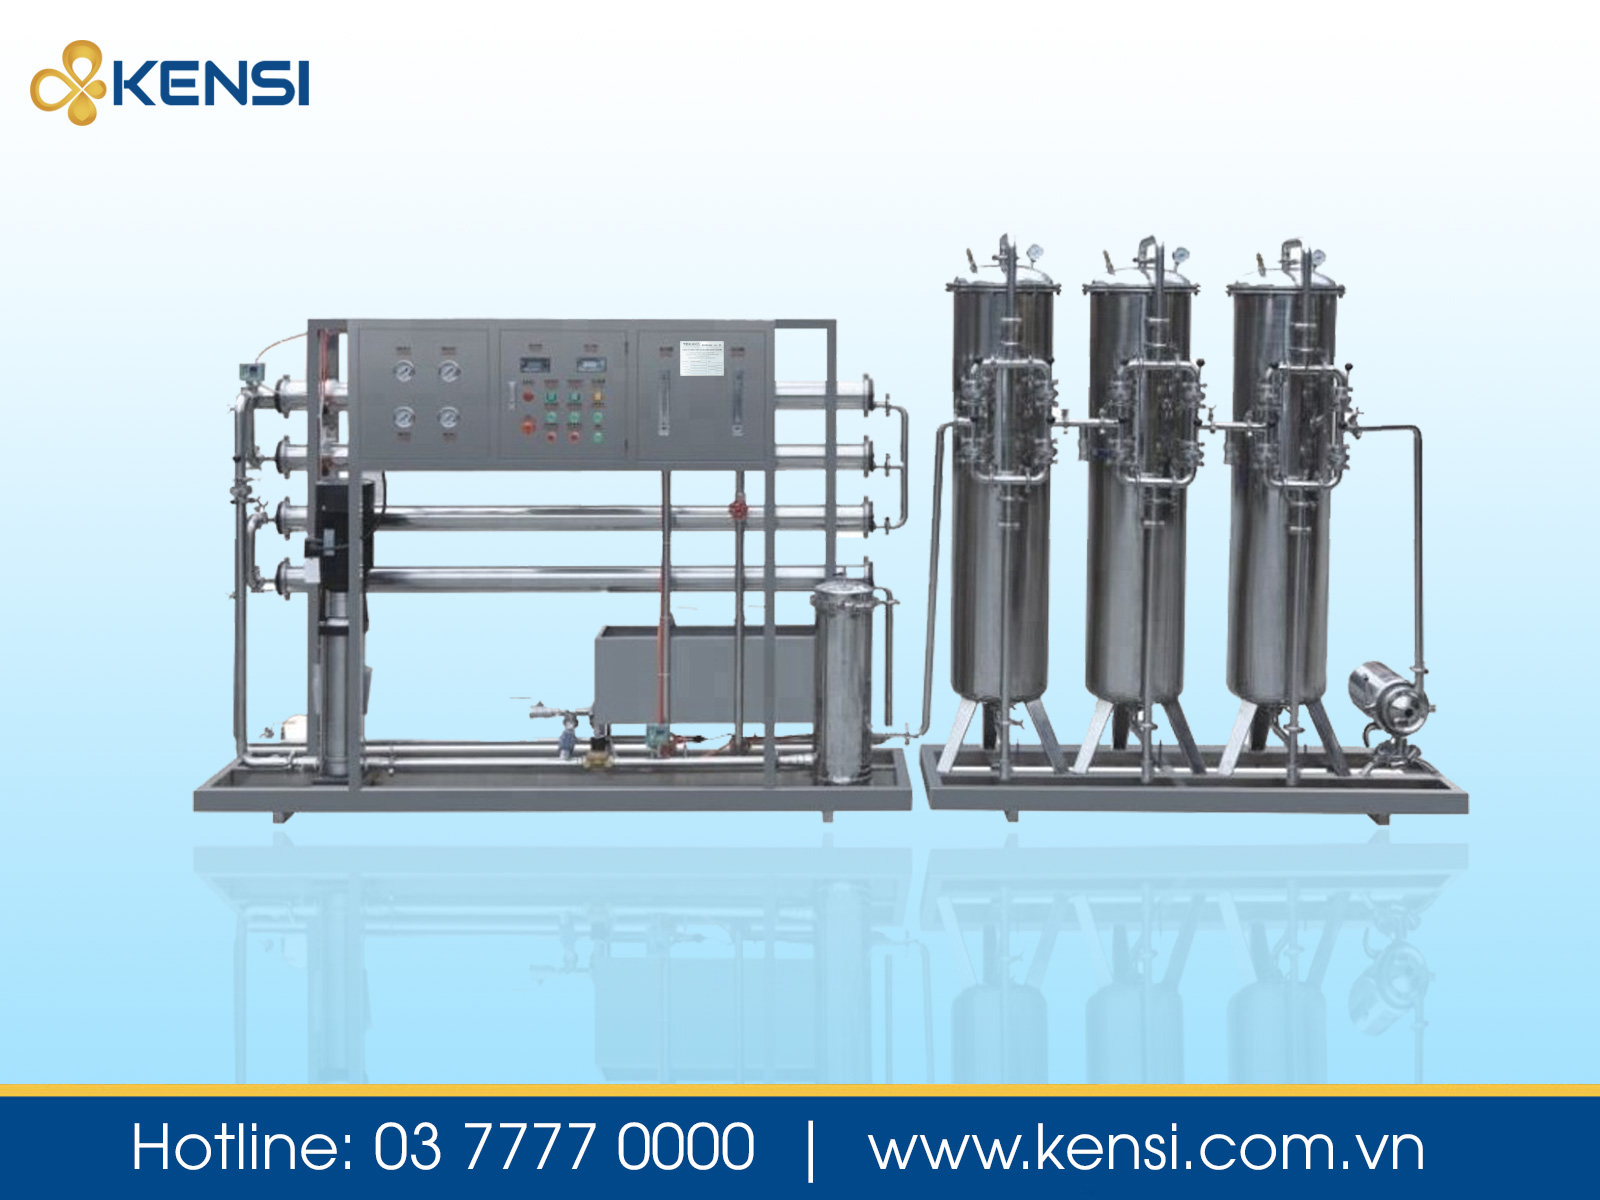 Máy lọc nước công nghiệp Kensi